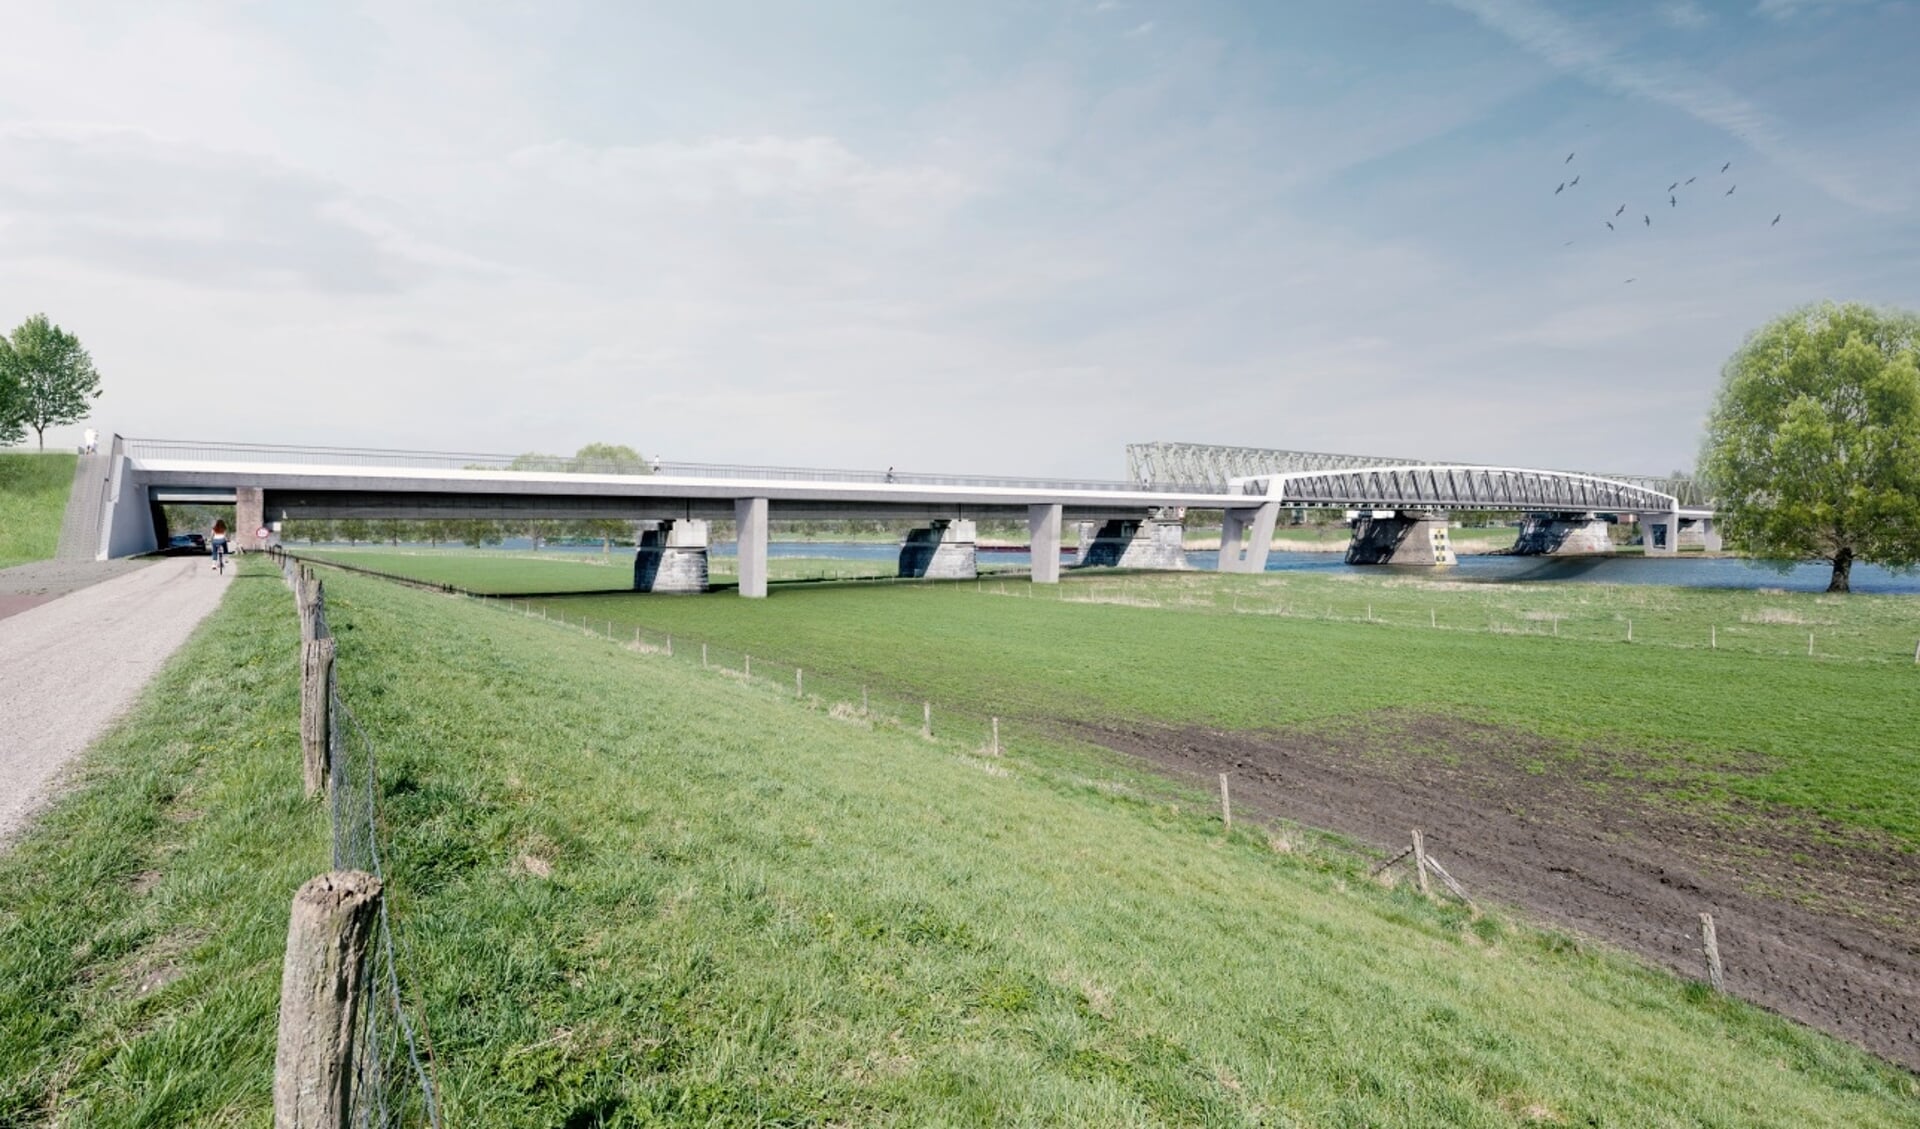 Artist impression van de fietsbrug die tussen Katwijk en Mook wordt aangelegd.